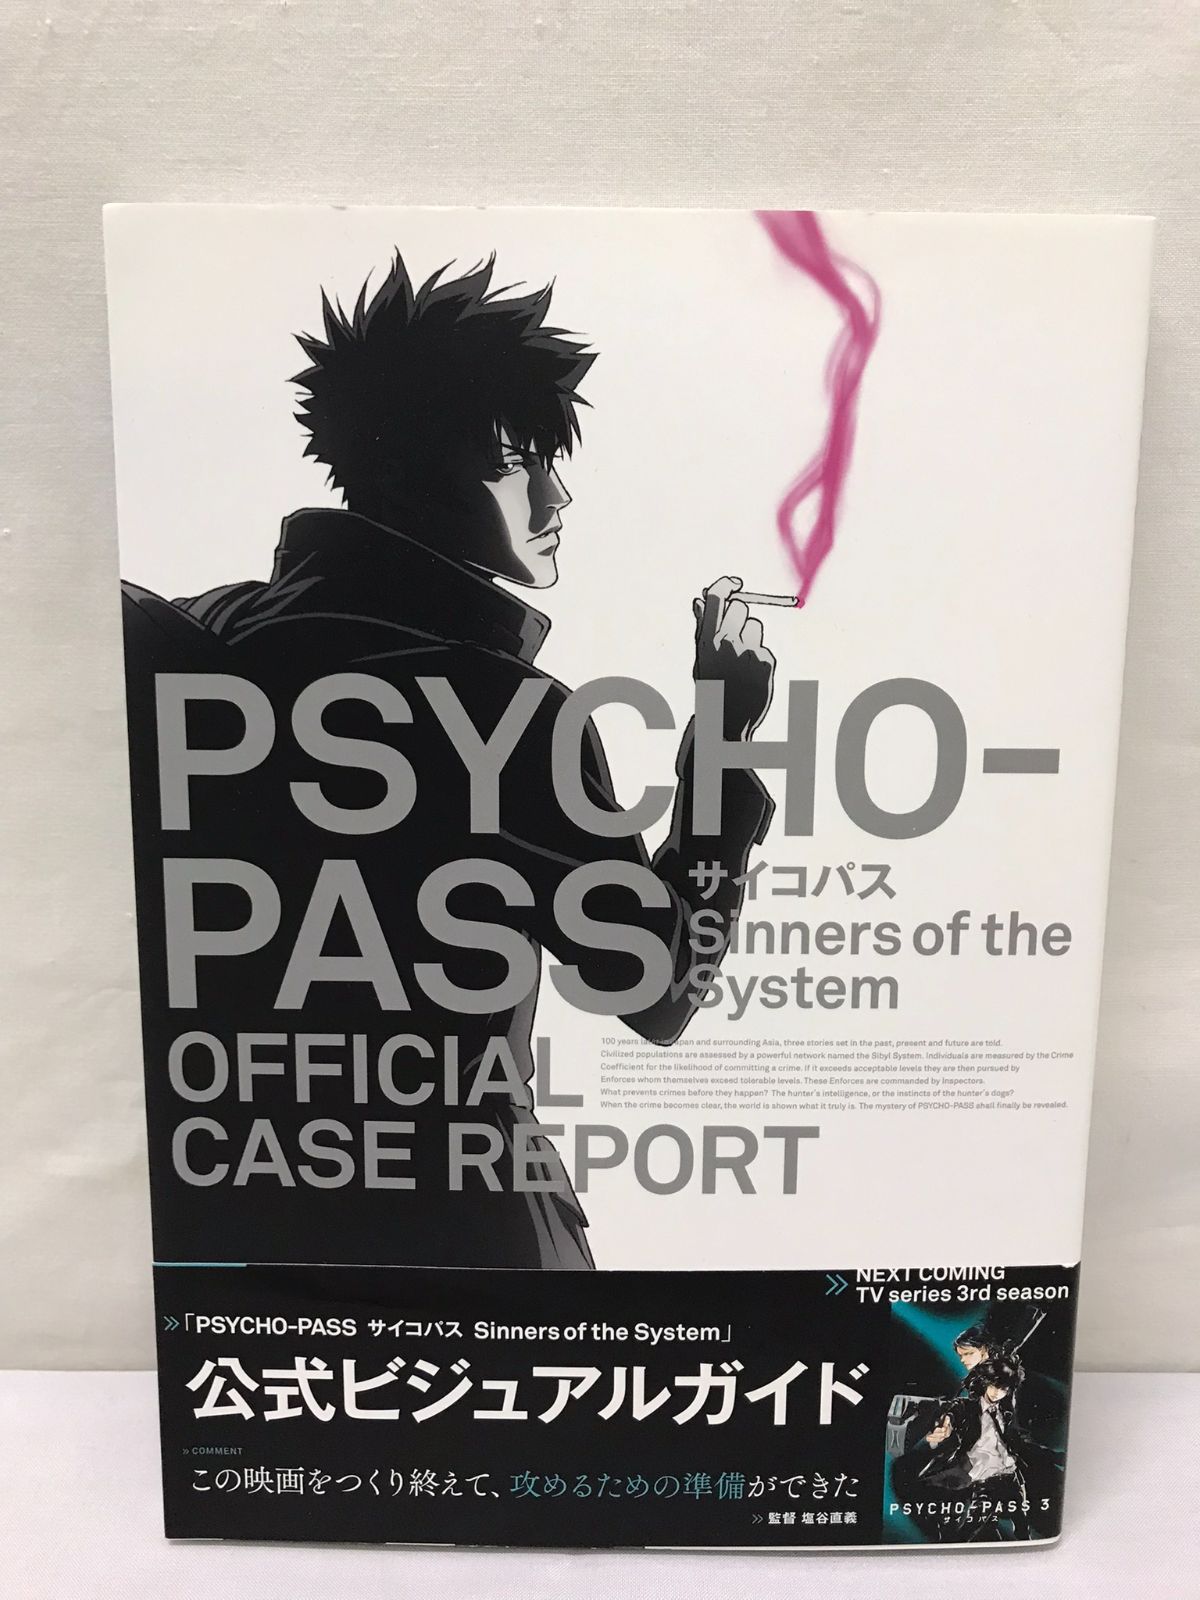 保障できる PSYCHO-PASS OFFICIAL CASE REPORT 劇場版パンフ アート 